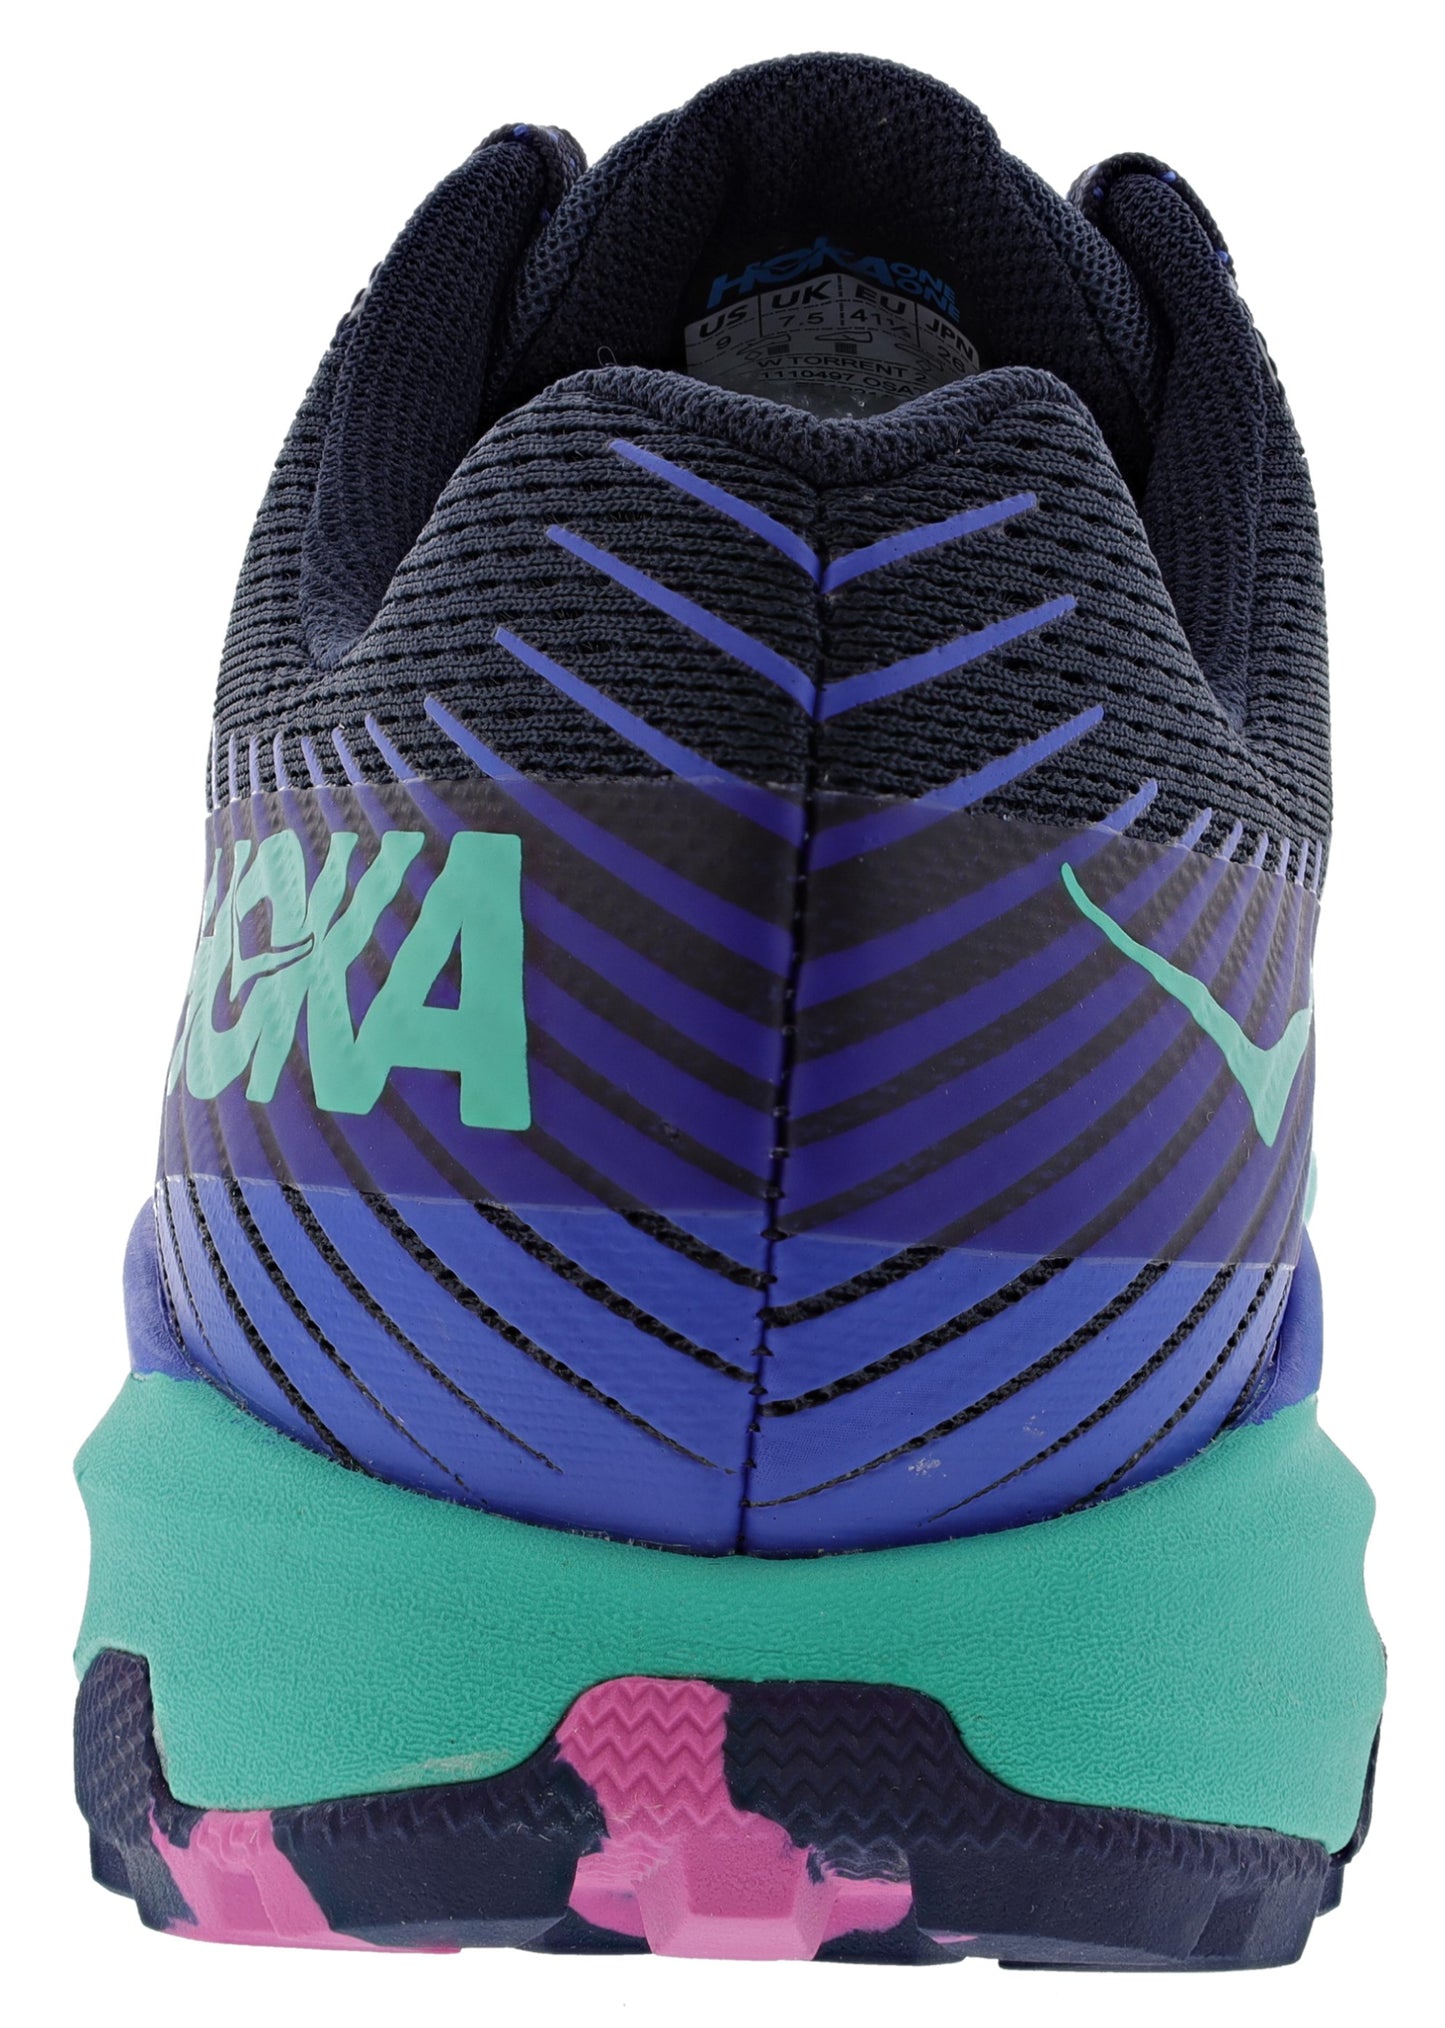 
                  
                    Hoka Women's Torrent 2 Lightweight Trail Running Shoes
                  
                